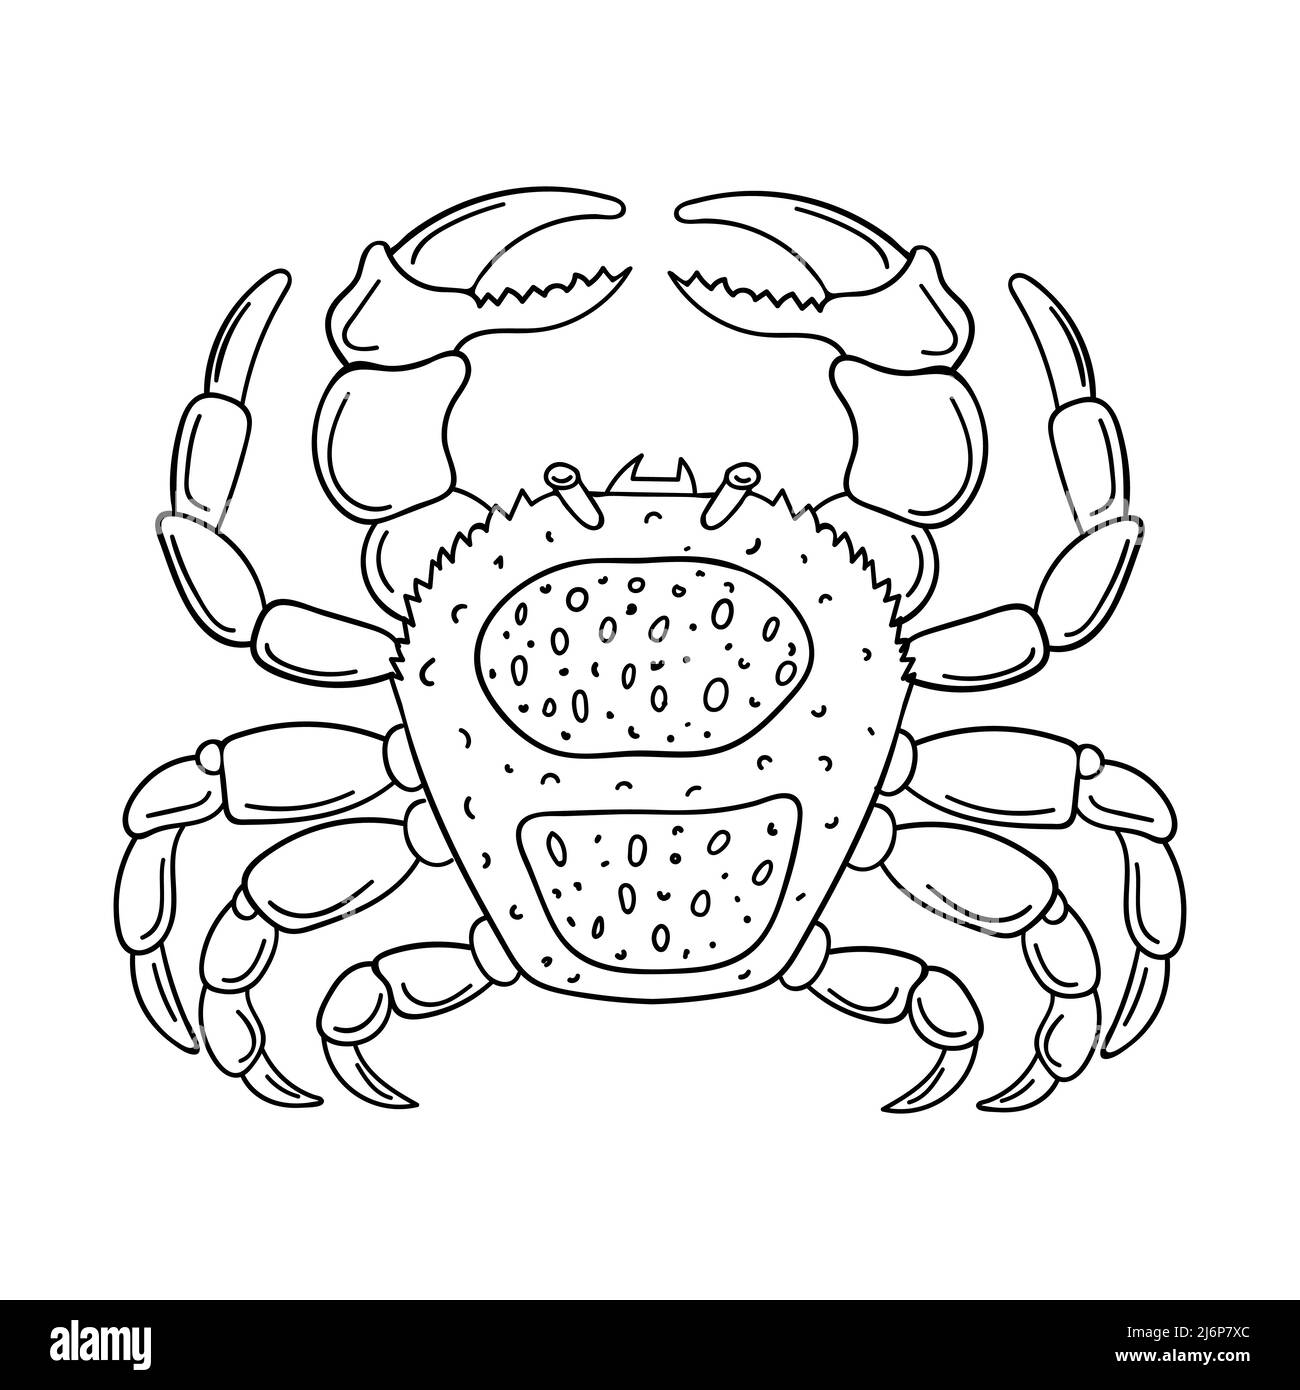 Skizze einer Krabbe. Marine Arthropoden Tier, handgezeichnetes Doodle Design-Element. Einfache Kontur schwarz-weiß Vektordarstellung. Isoliert auf einem weißen b Stock Vektor